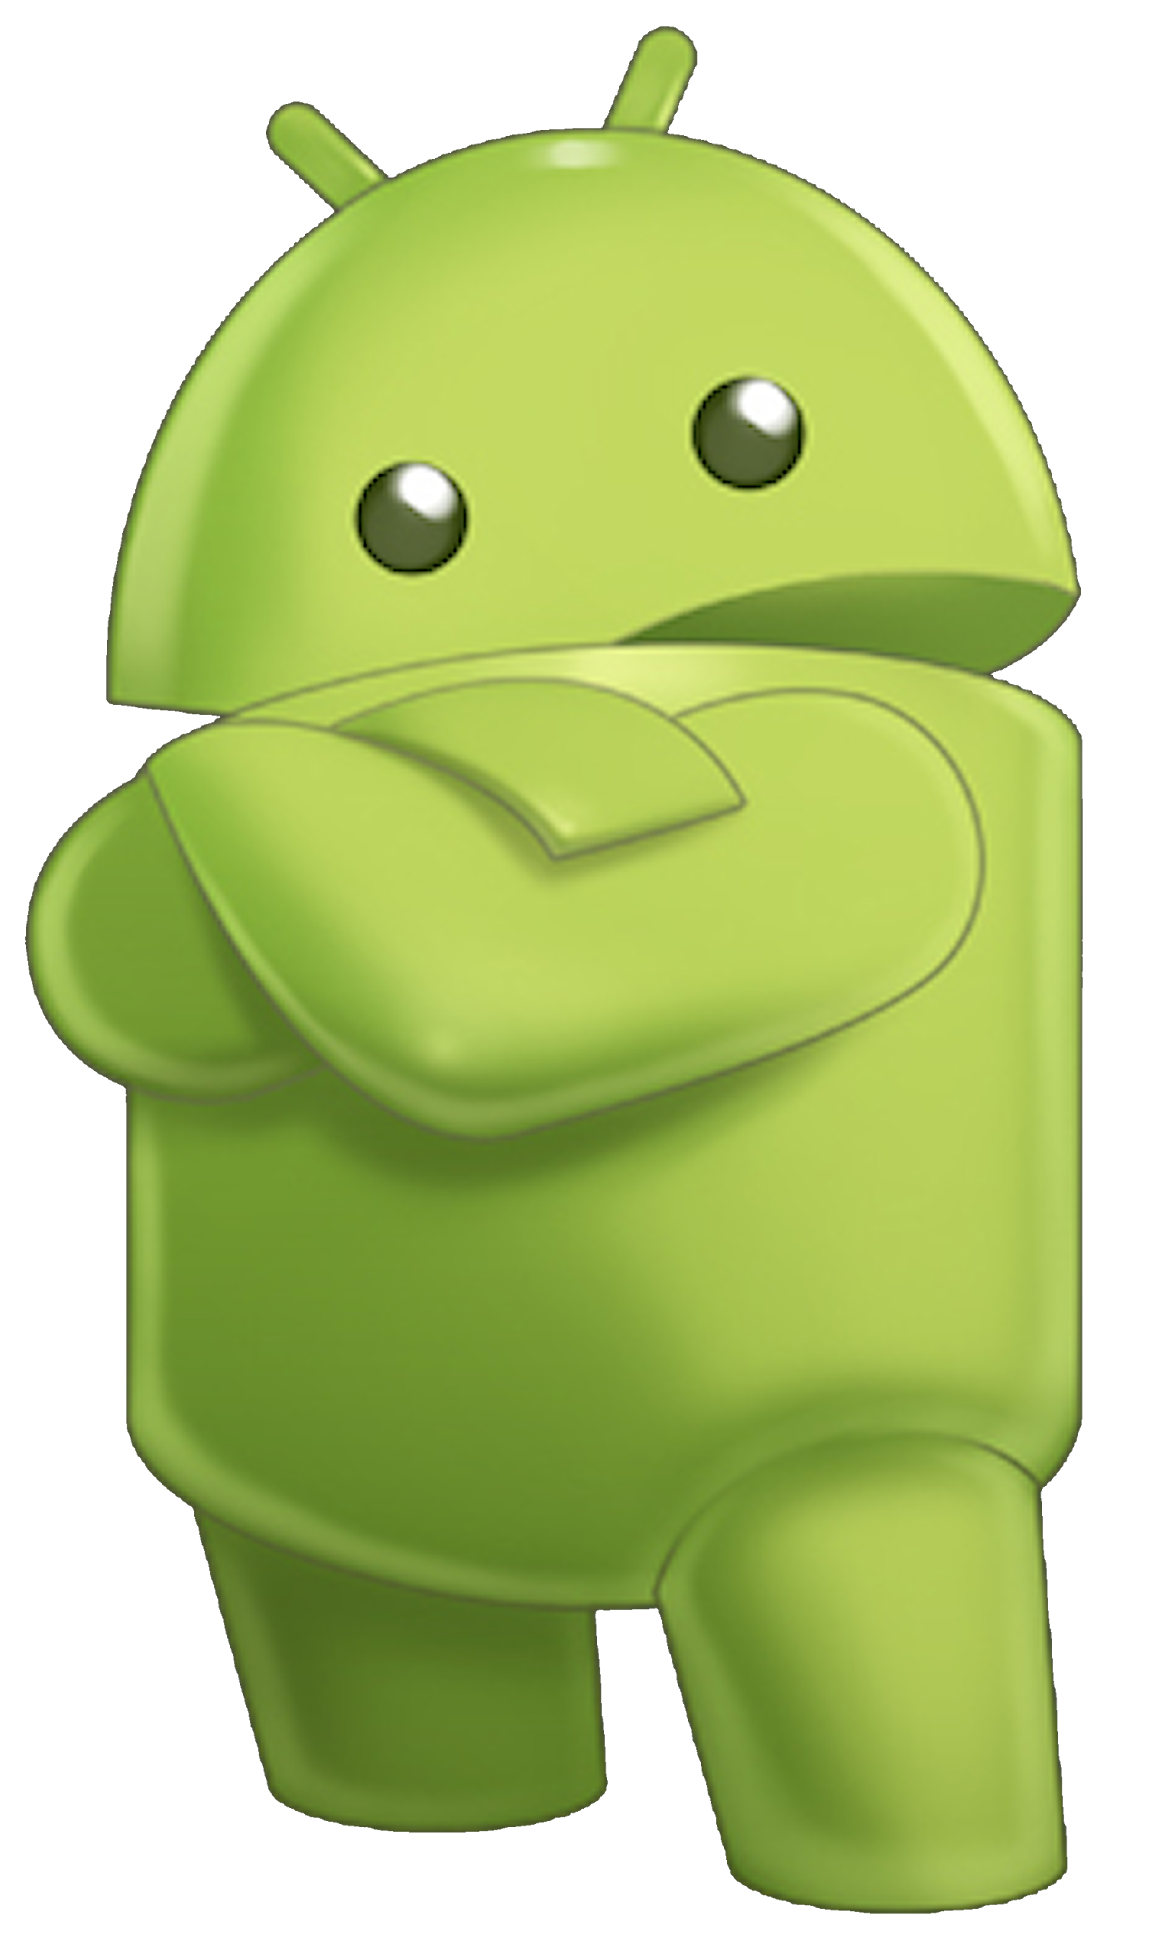 3D android logo model - TurboSquid 1231465